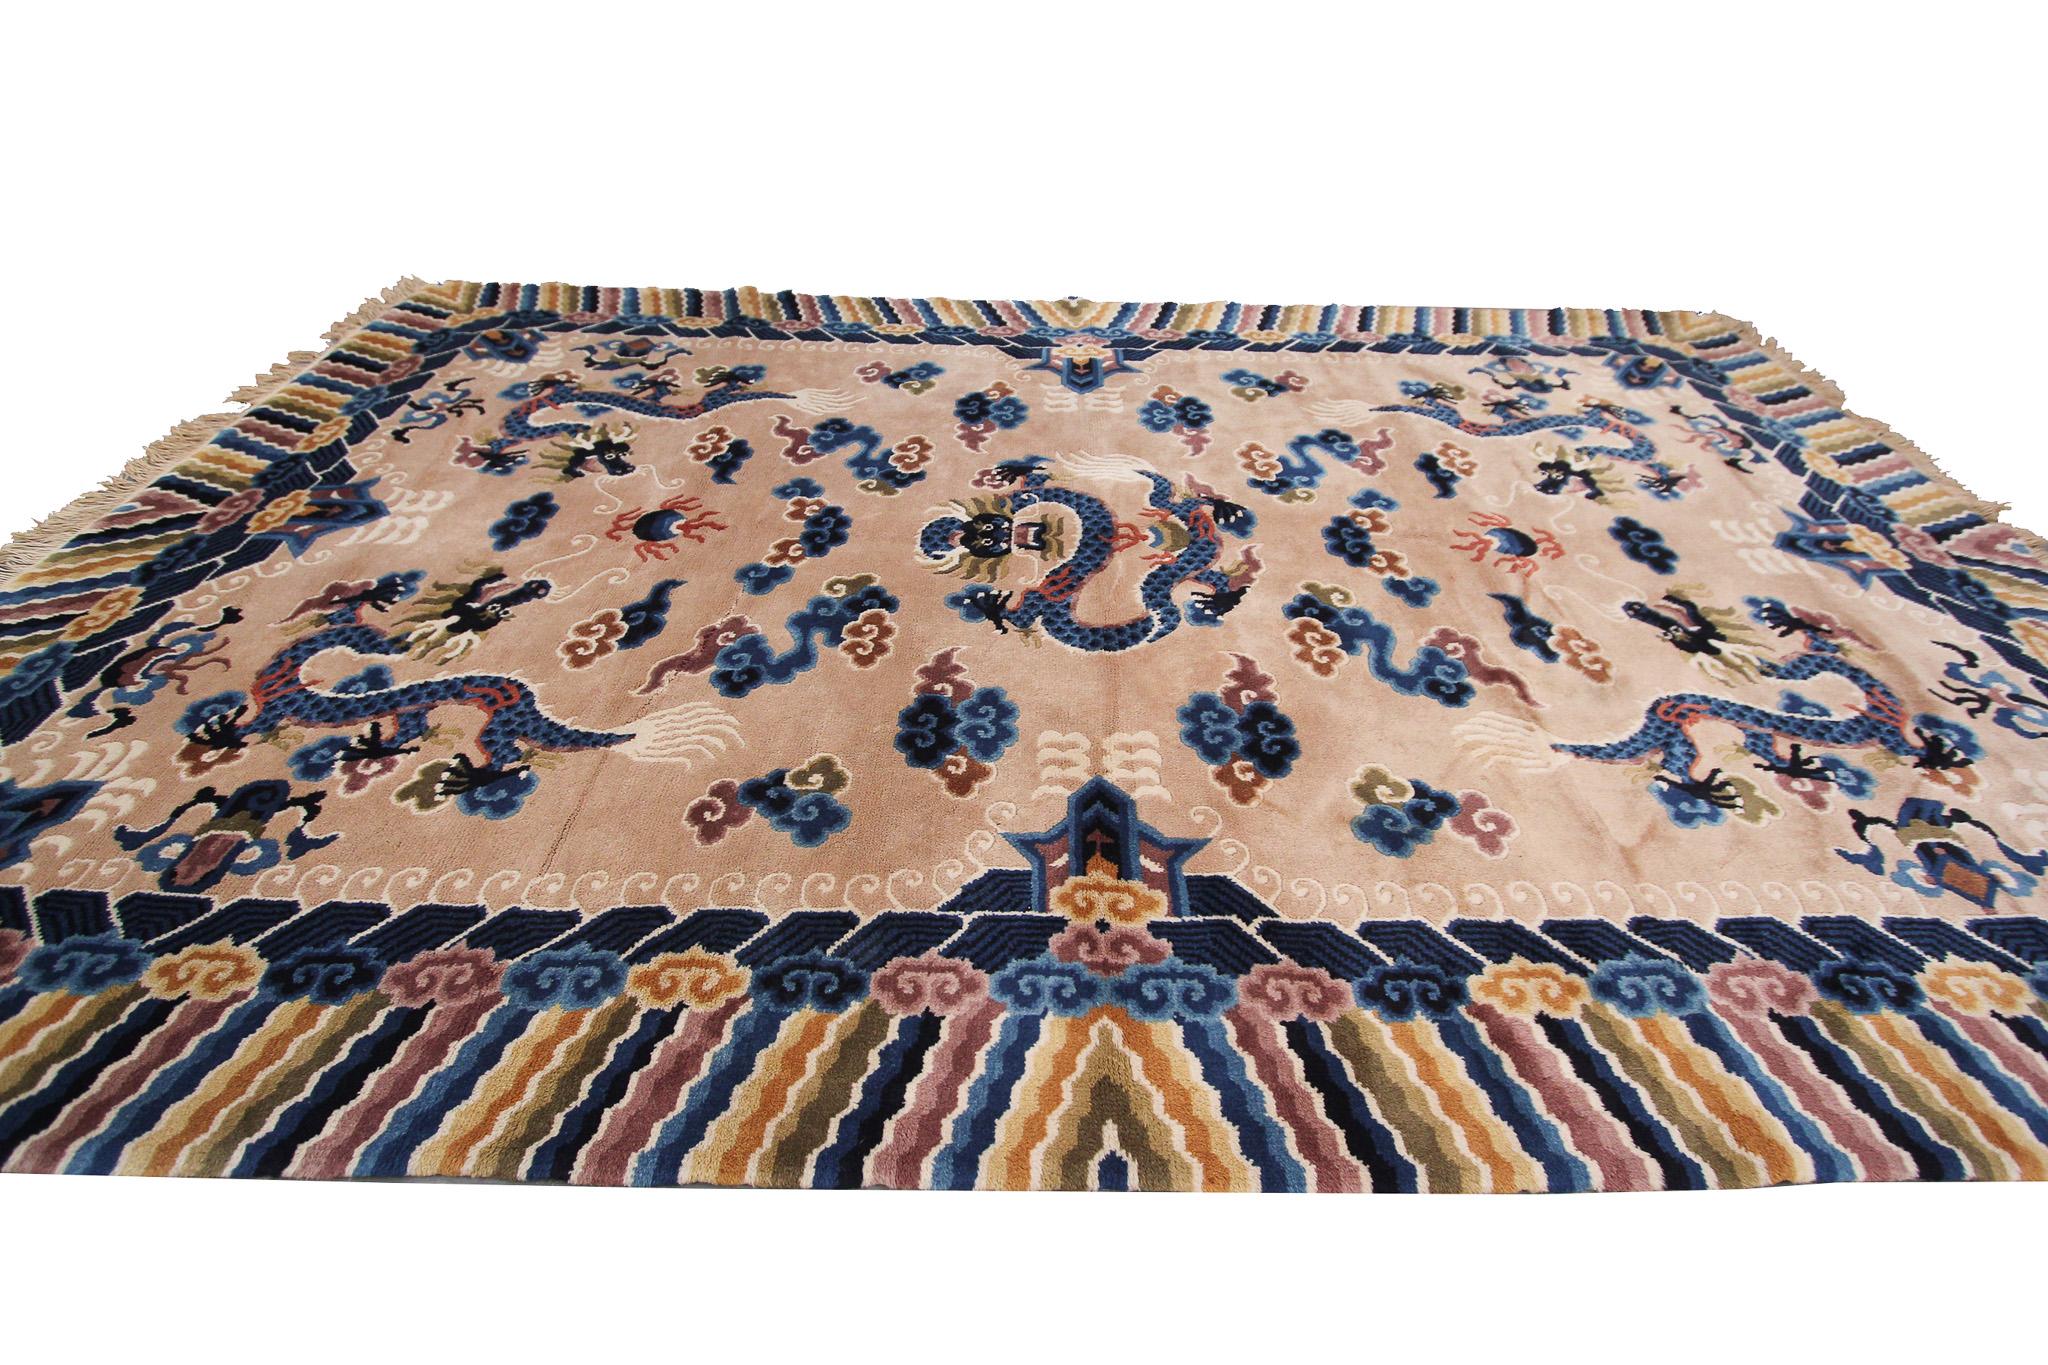 Vintage Art Deco Teppich Drachenteppich Chinesischer Peking Teppich beige 5x8 

153cm x 244cm

130cmx191cm

